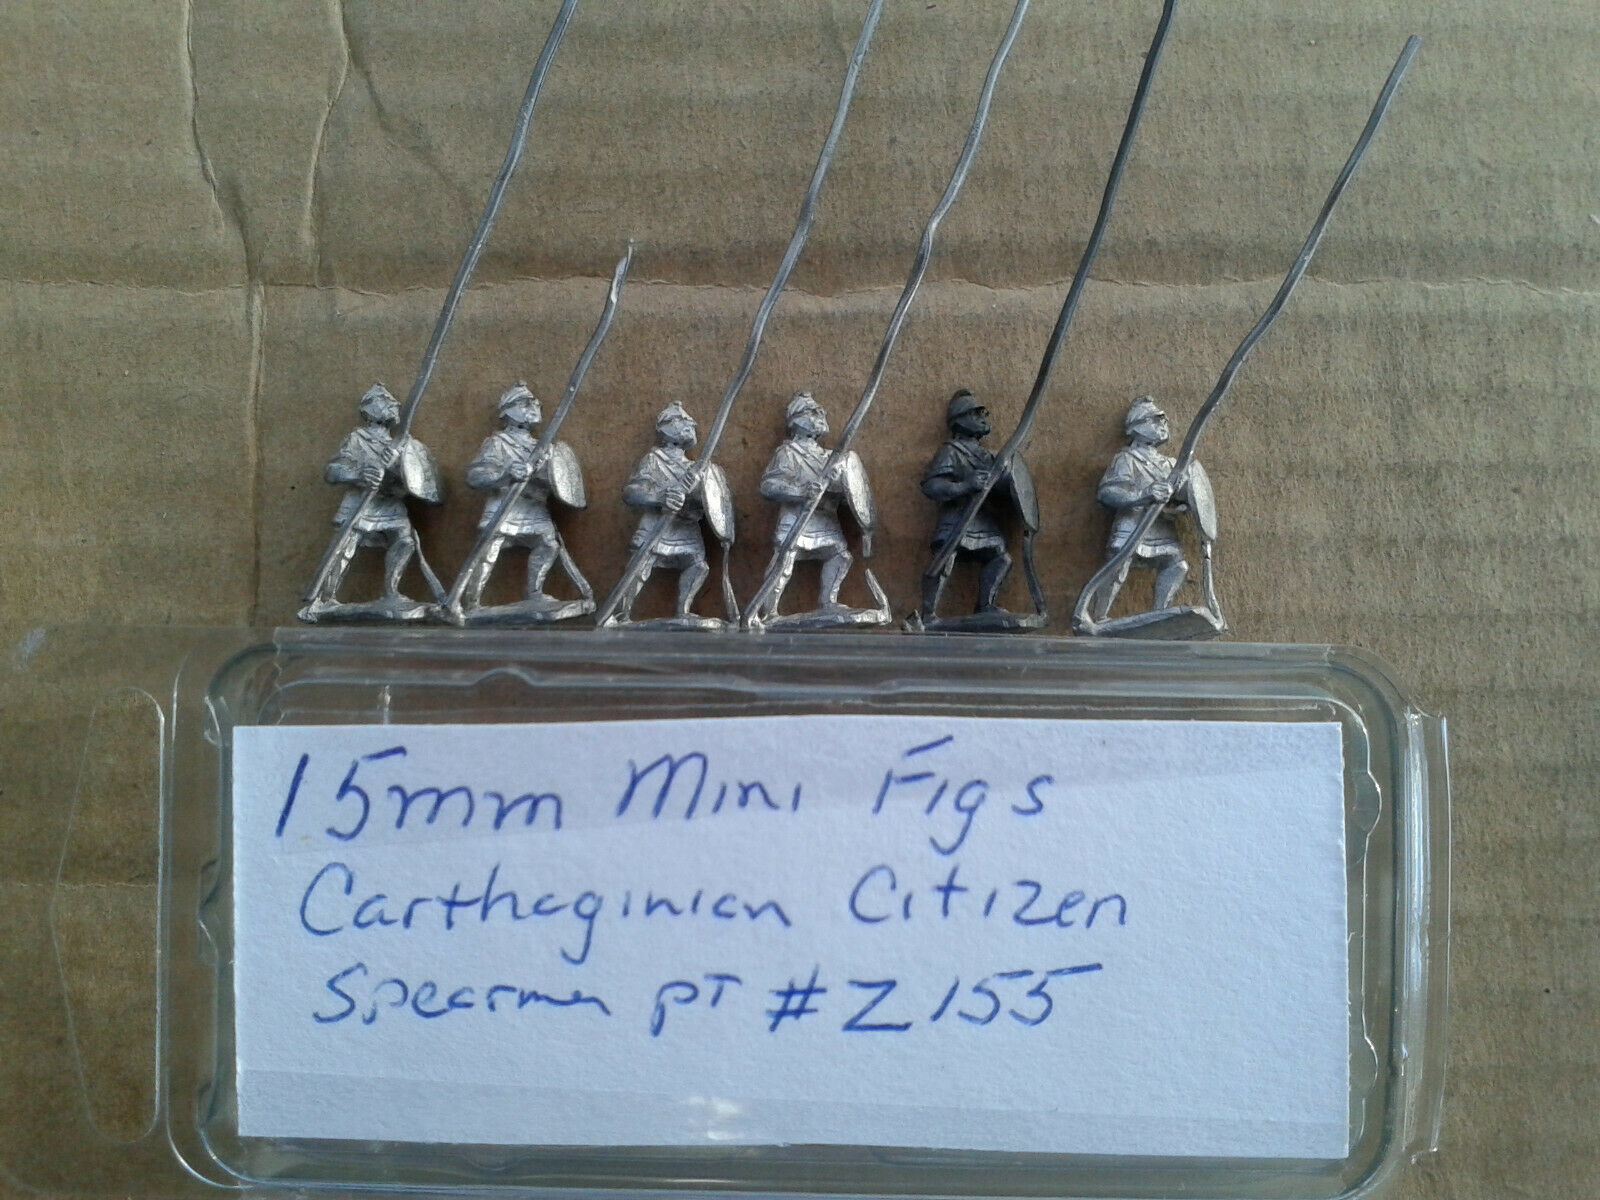 15mm Mini Figs Carthaginian Citizen Spearmen